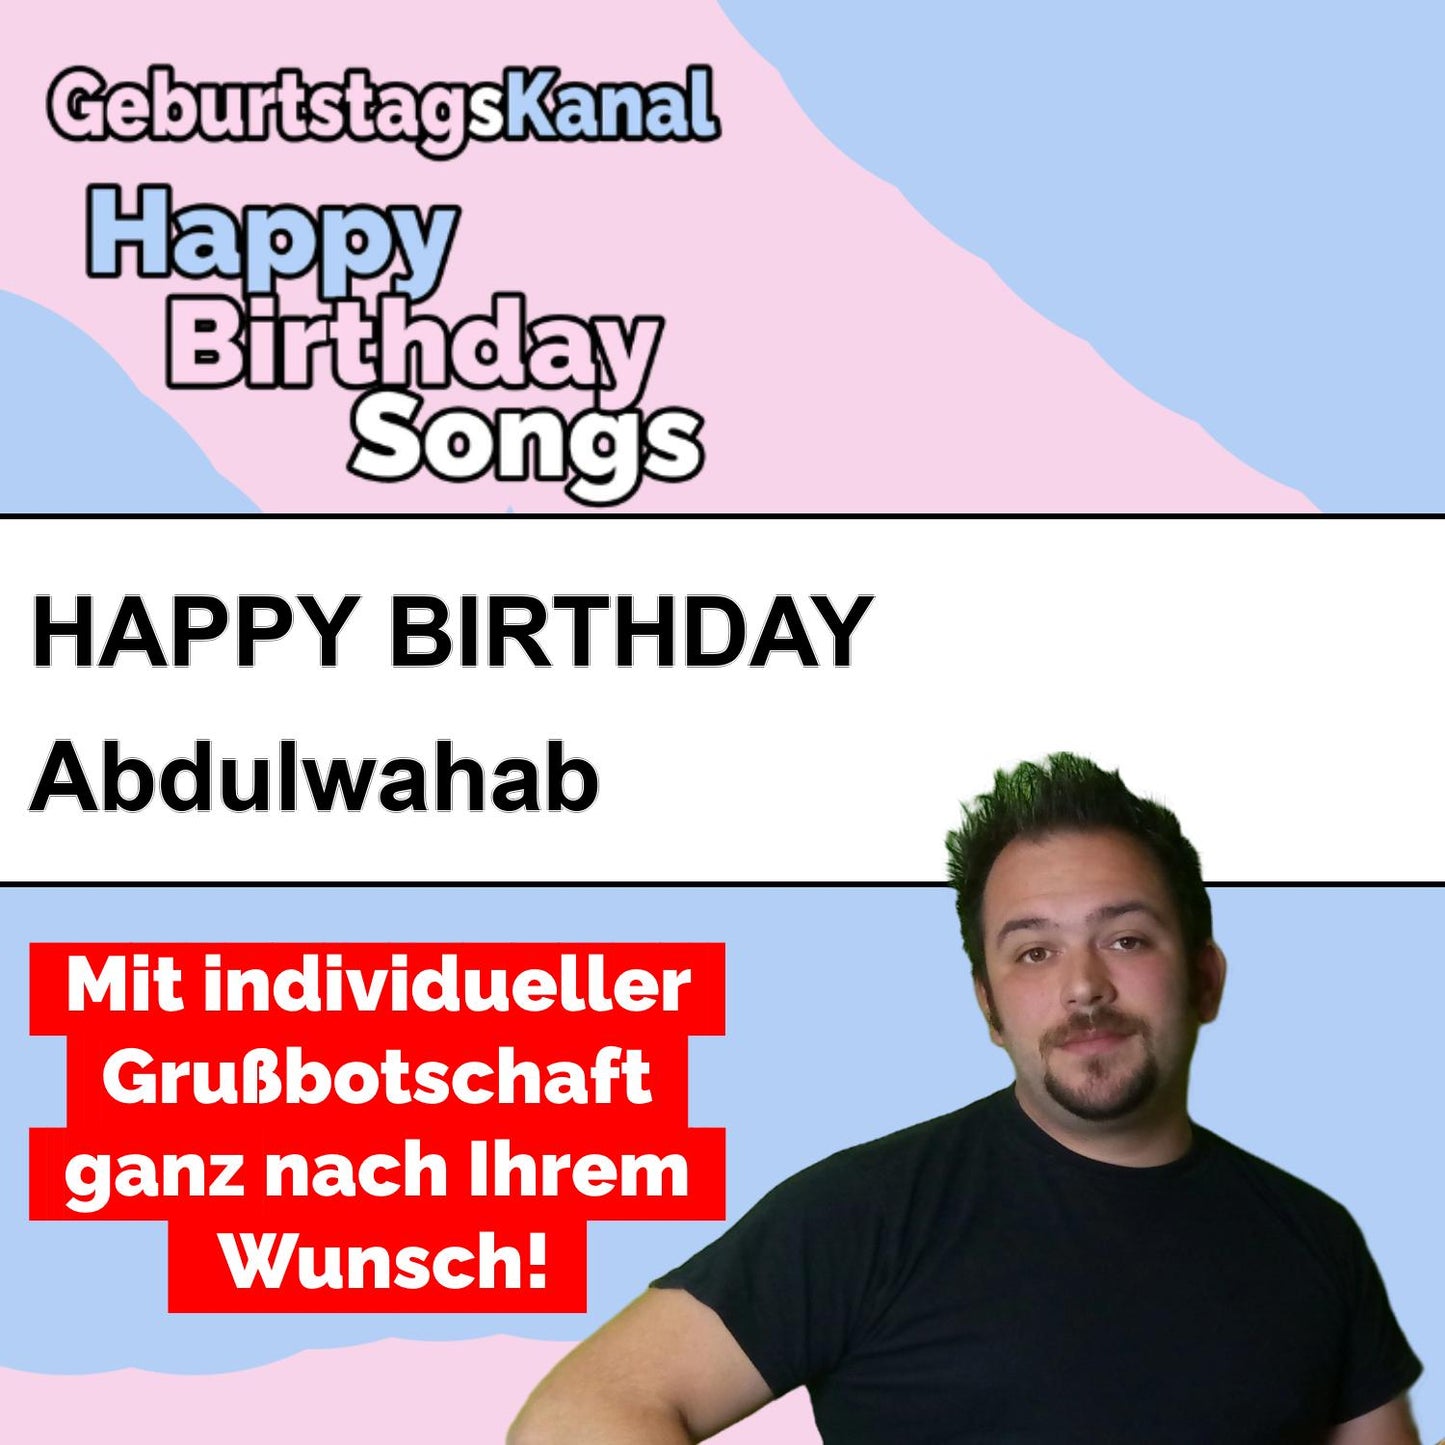 Produktbild Happy Birthday to you Abdulwahab mit Wunschgrußbotschaft